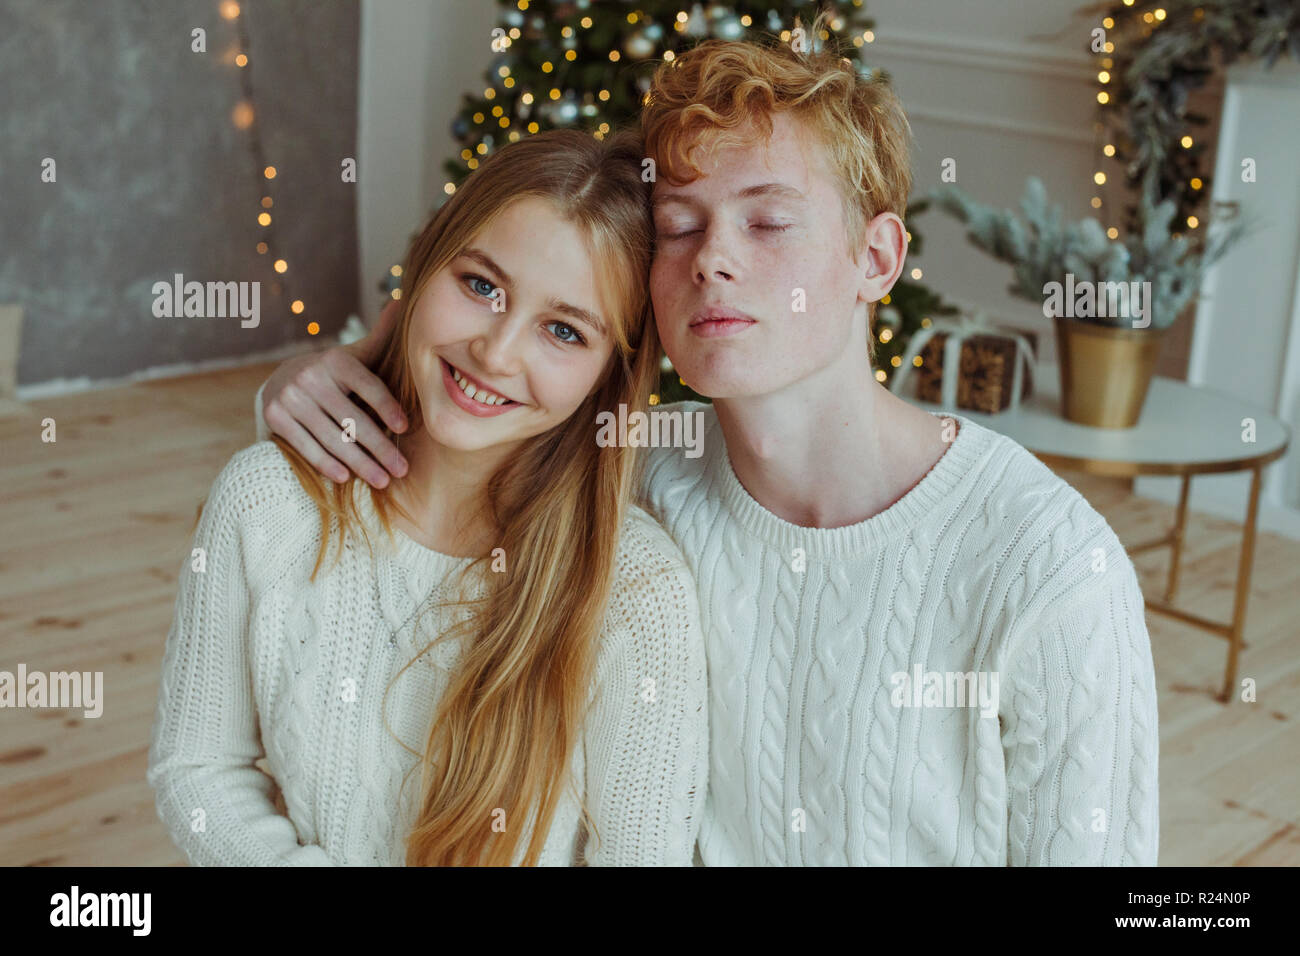 Hermosa joven pareja sentados juntos y sonrientes en la cámara en la víspera de Navidad Foto de stock